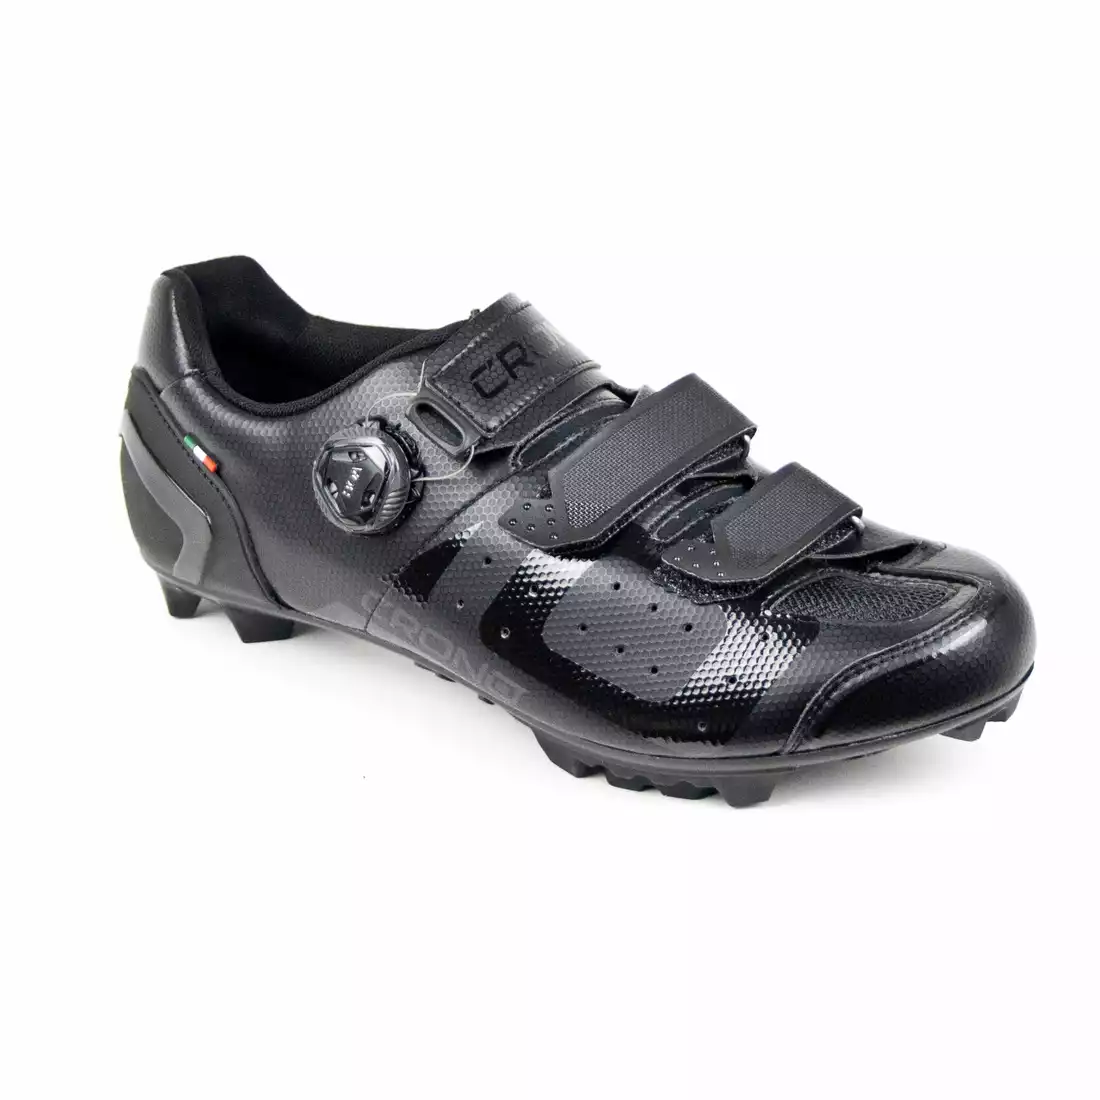 CRONO CX-3-22 Kerékpáros cipő MTB, kompozit, fekete